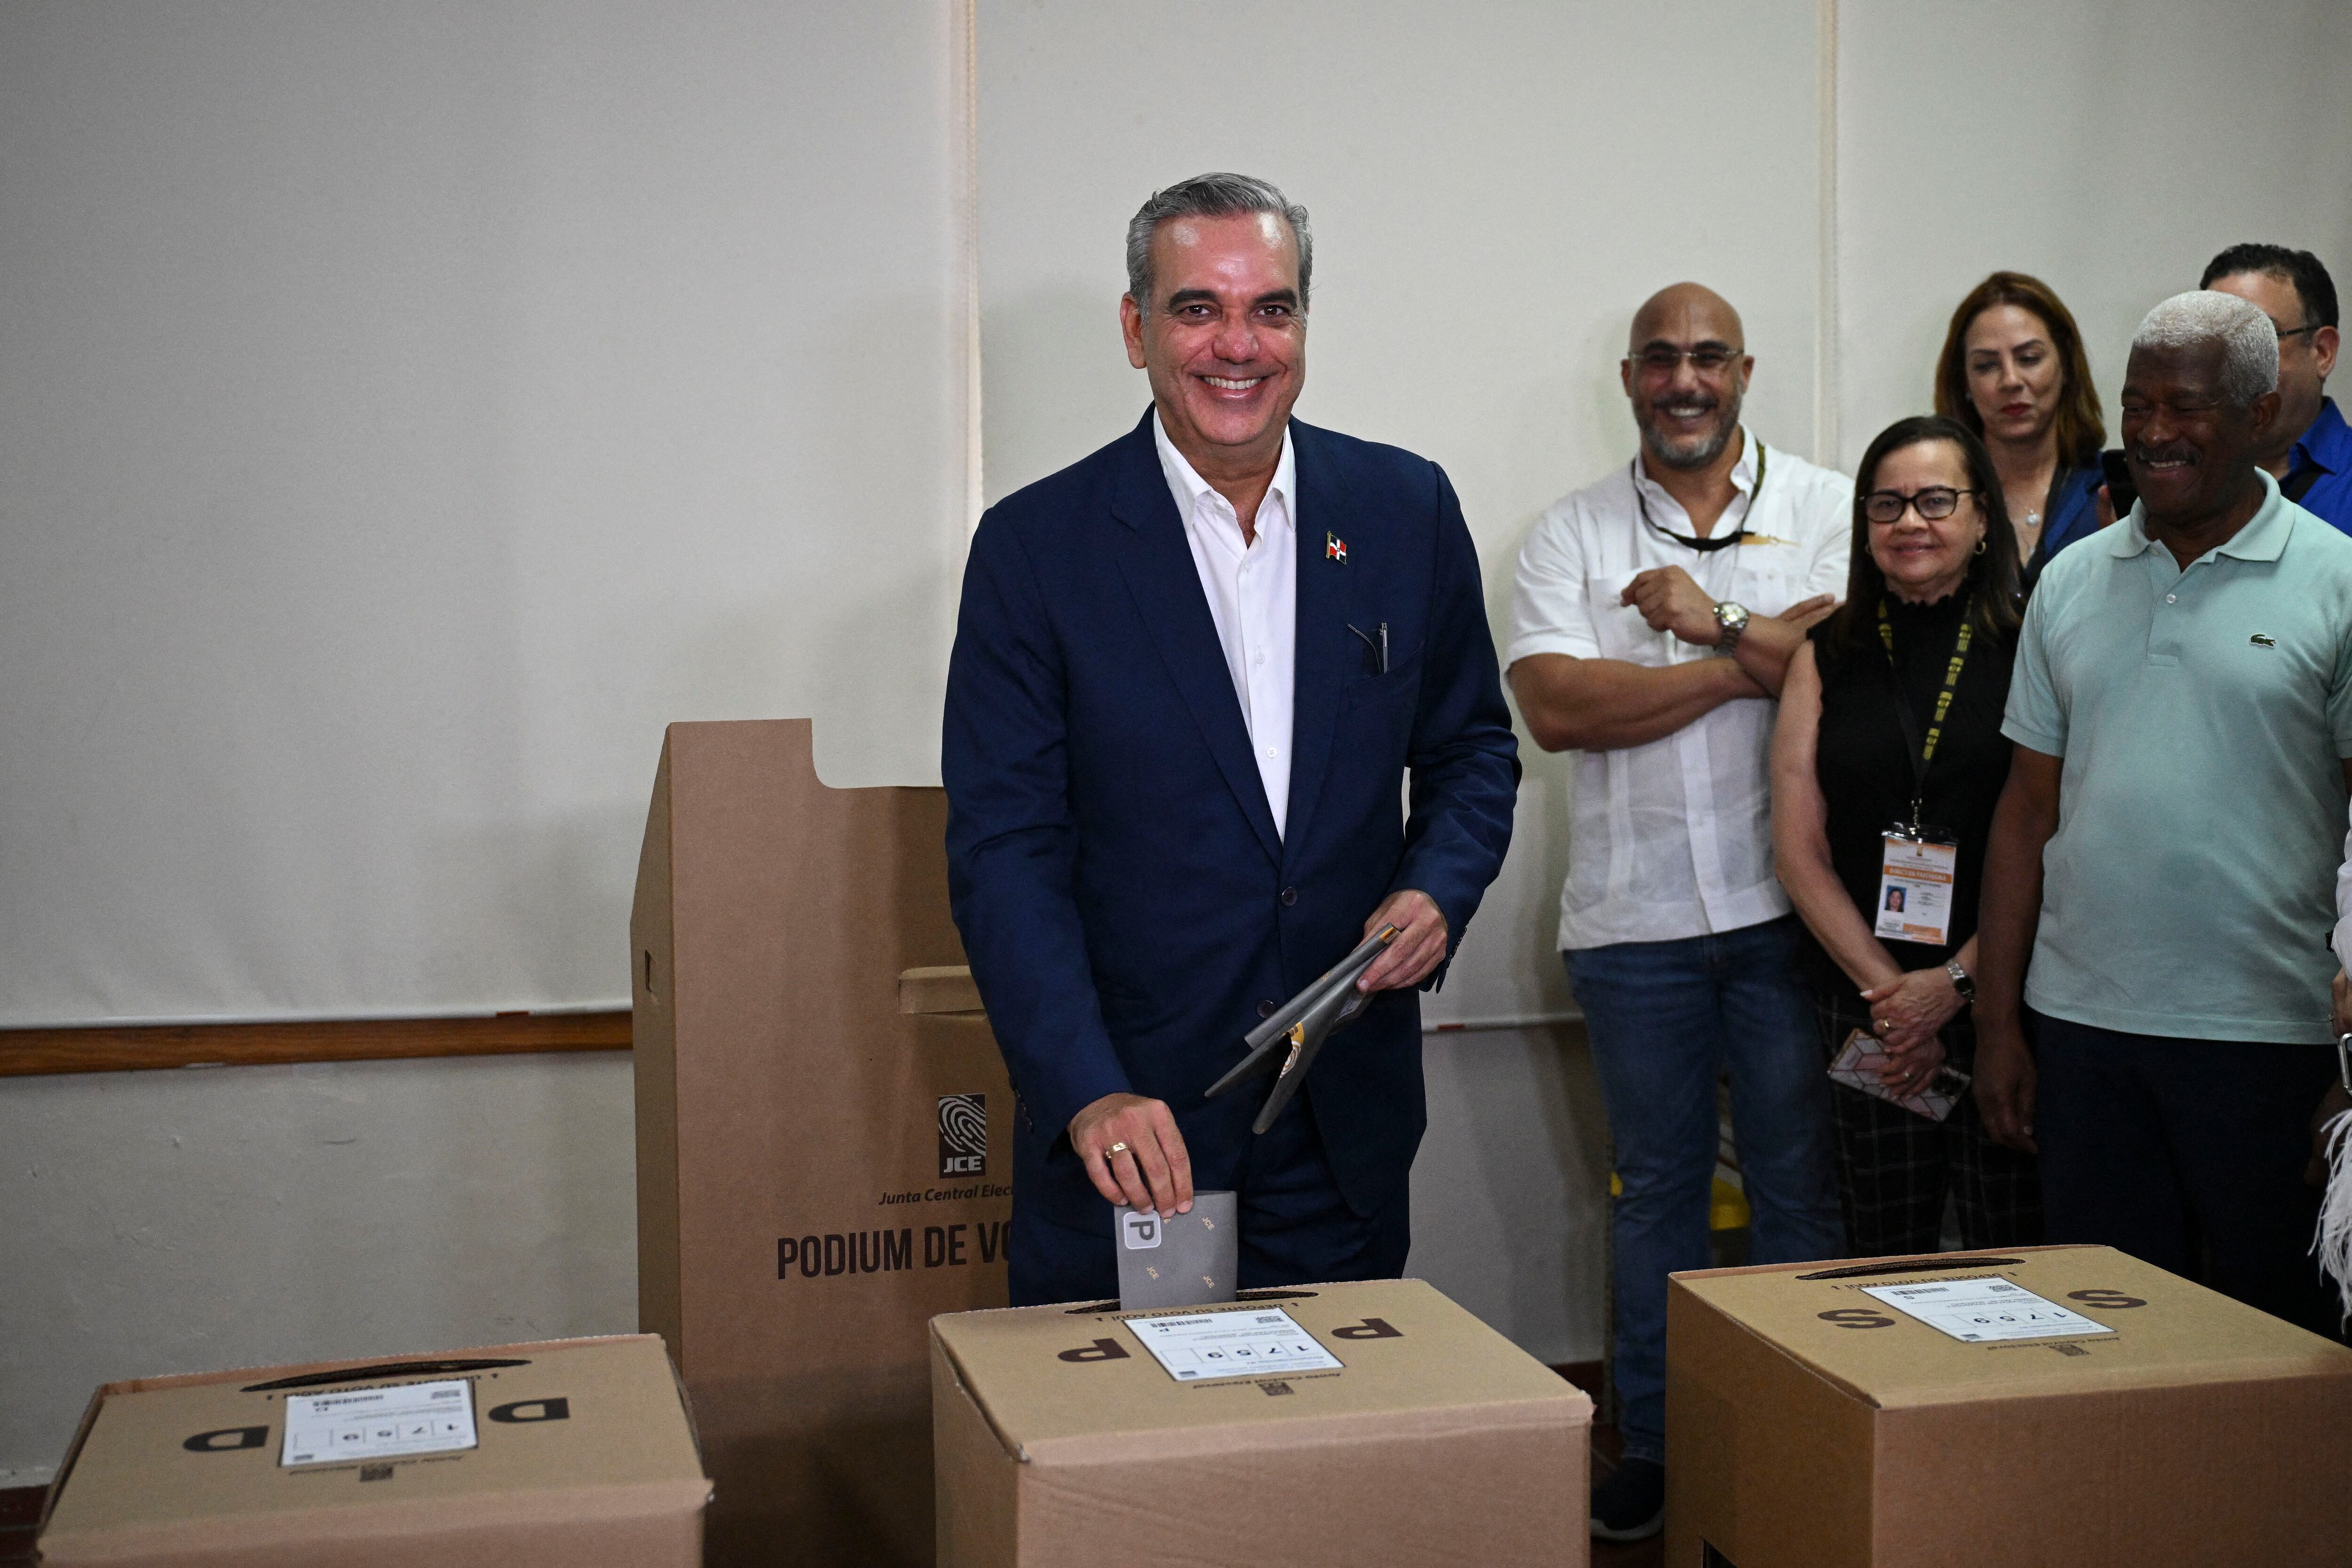 El presidente de la República Dominicana y candidato presidencial del Partido Revolucionario Moderno (PRM), Luis Abinader, consiguió el 59% de los votos en el primer corte de resultados.